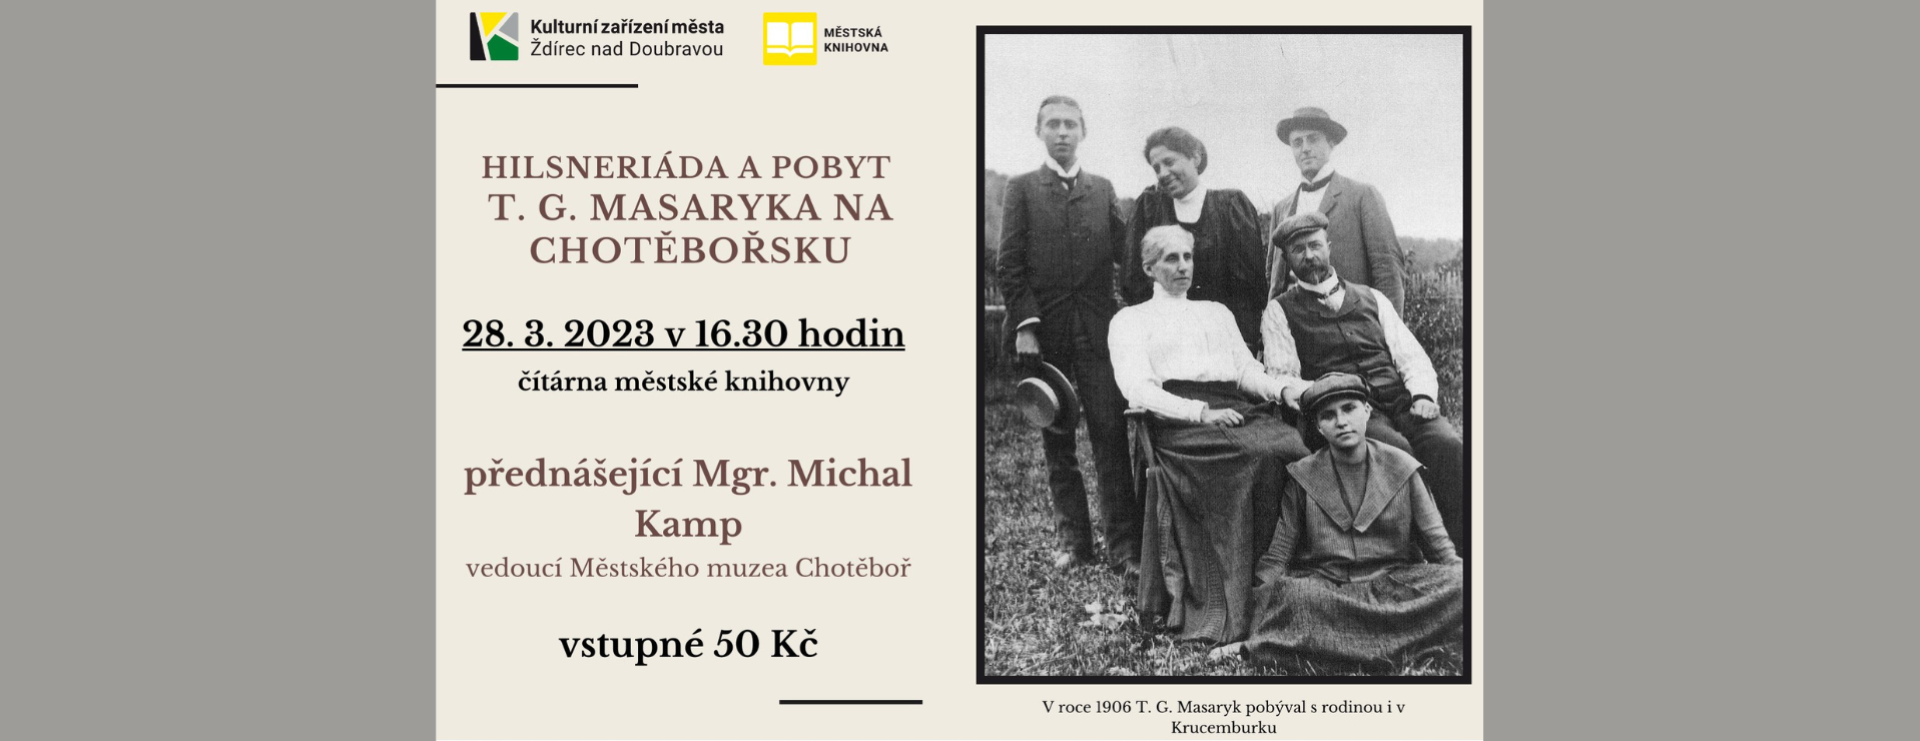 Přednáška T. G. Masaryk na Chotěbořsku